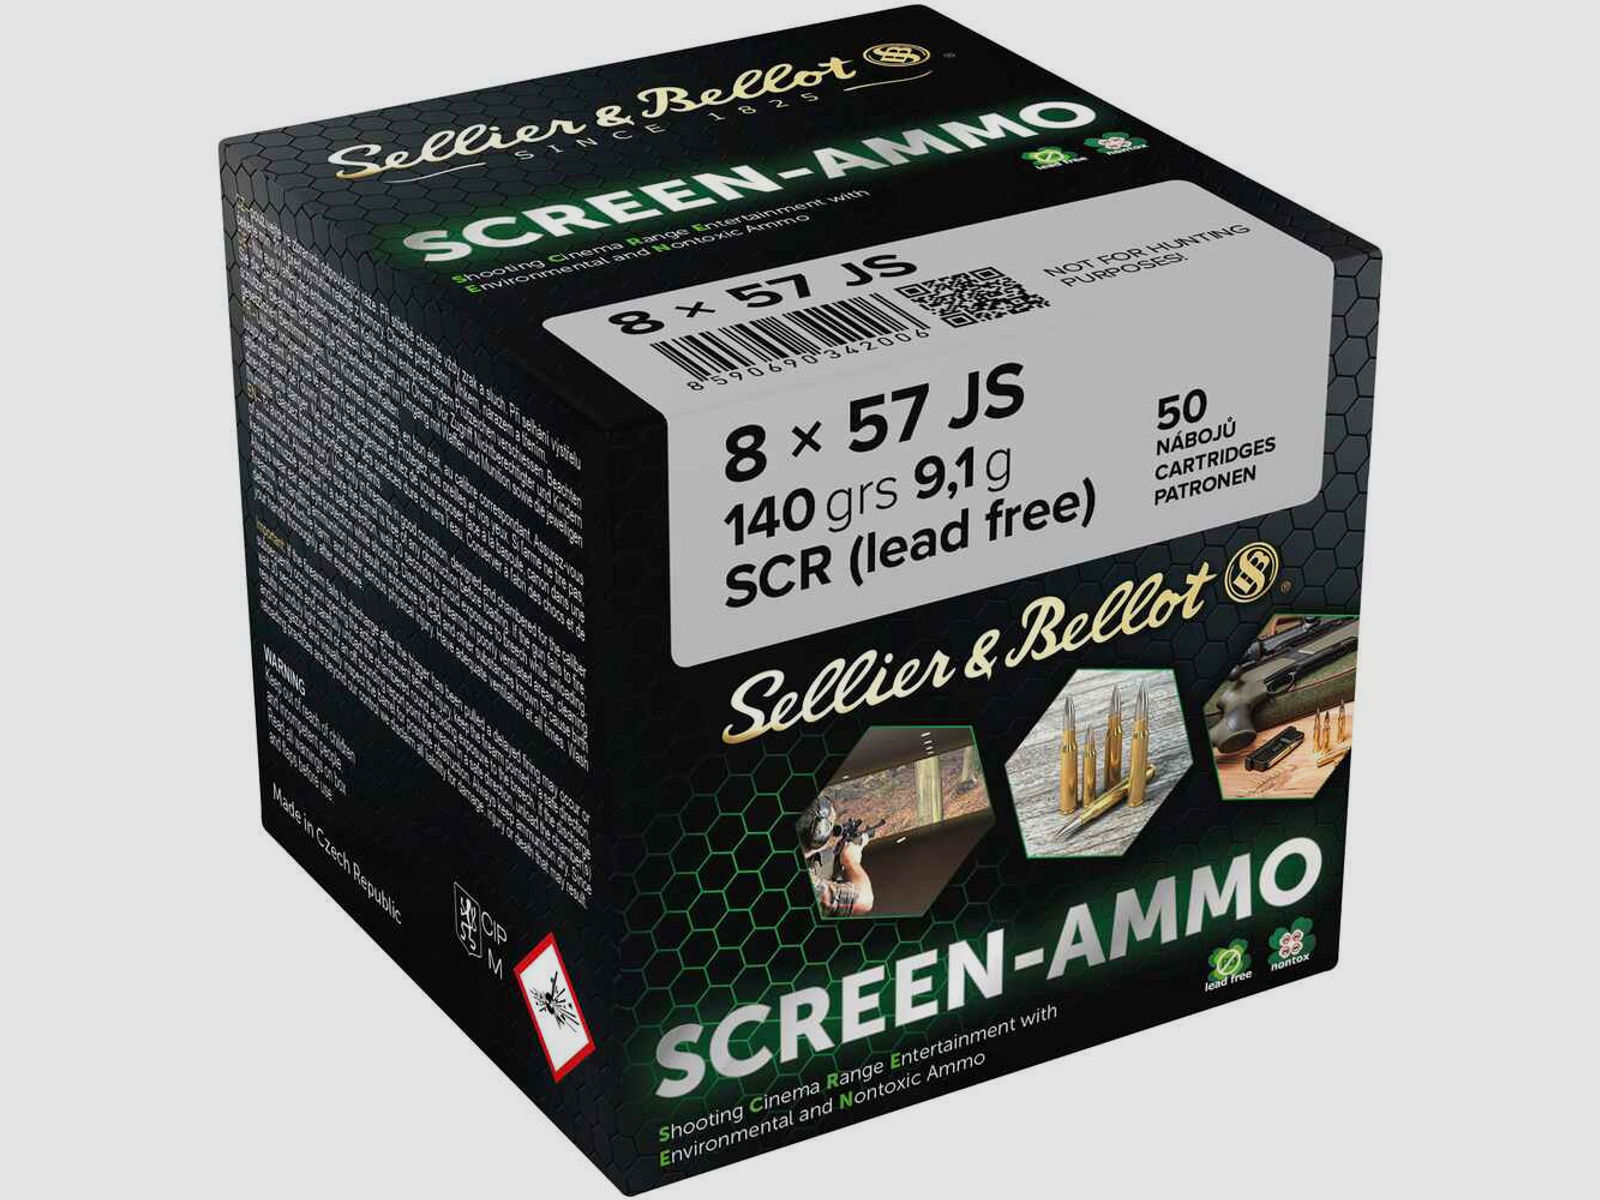 Sellier & Bellot 8x57JS 140grs Screen-Ammo 50STK Munition bleifrei